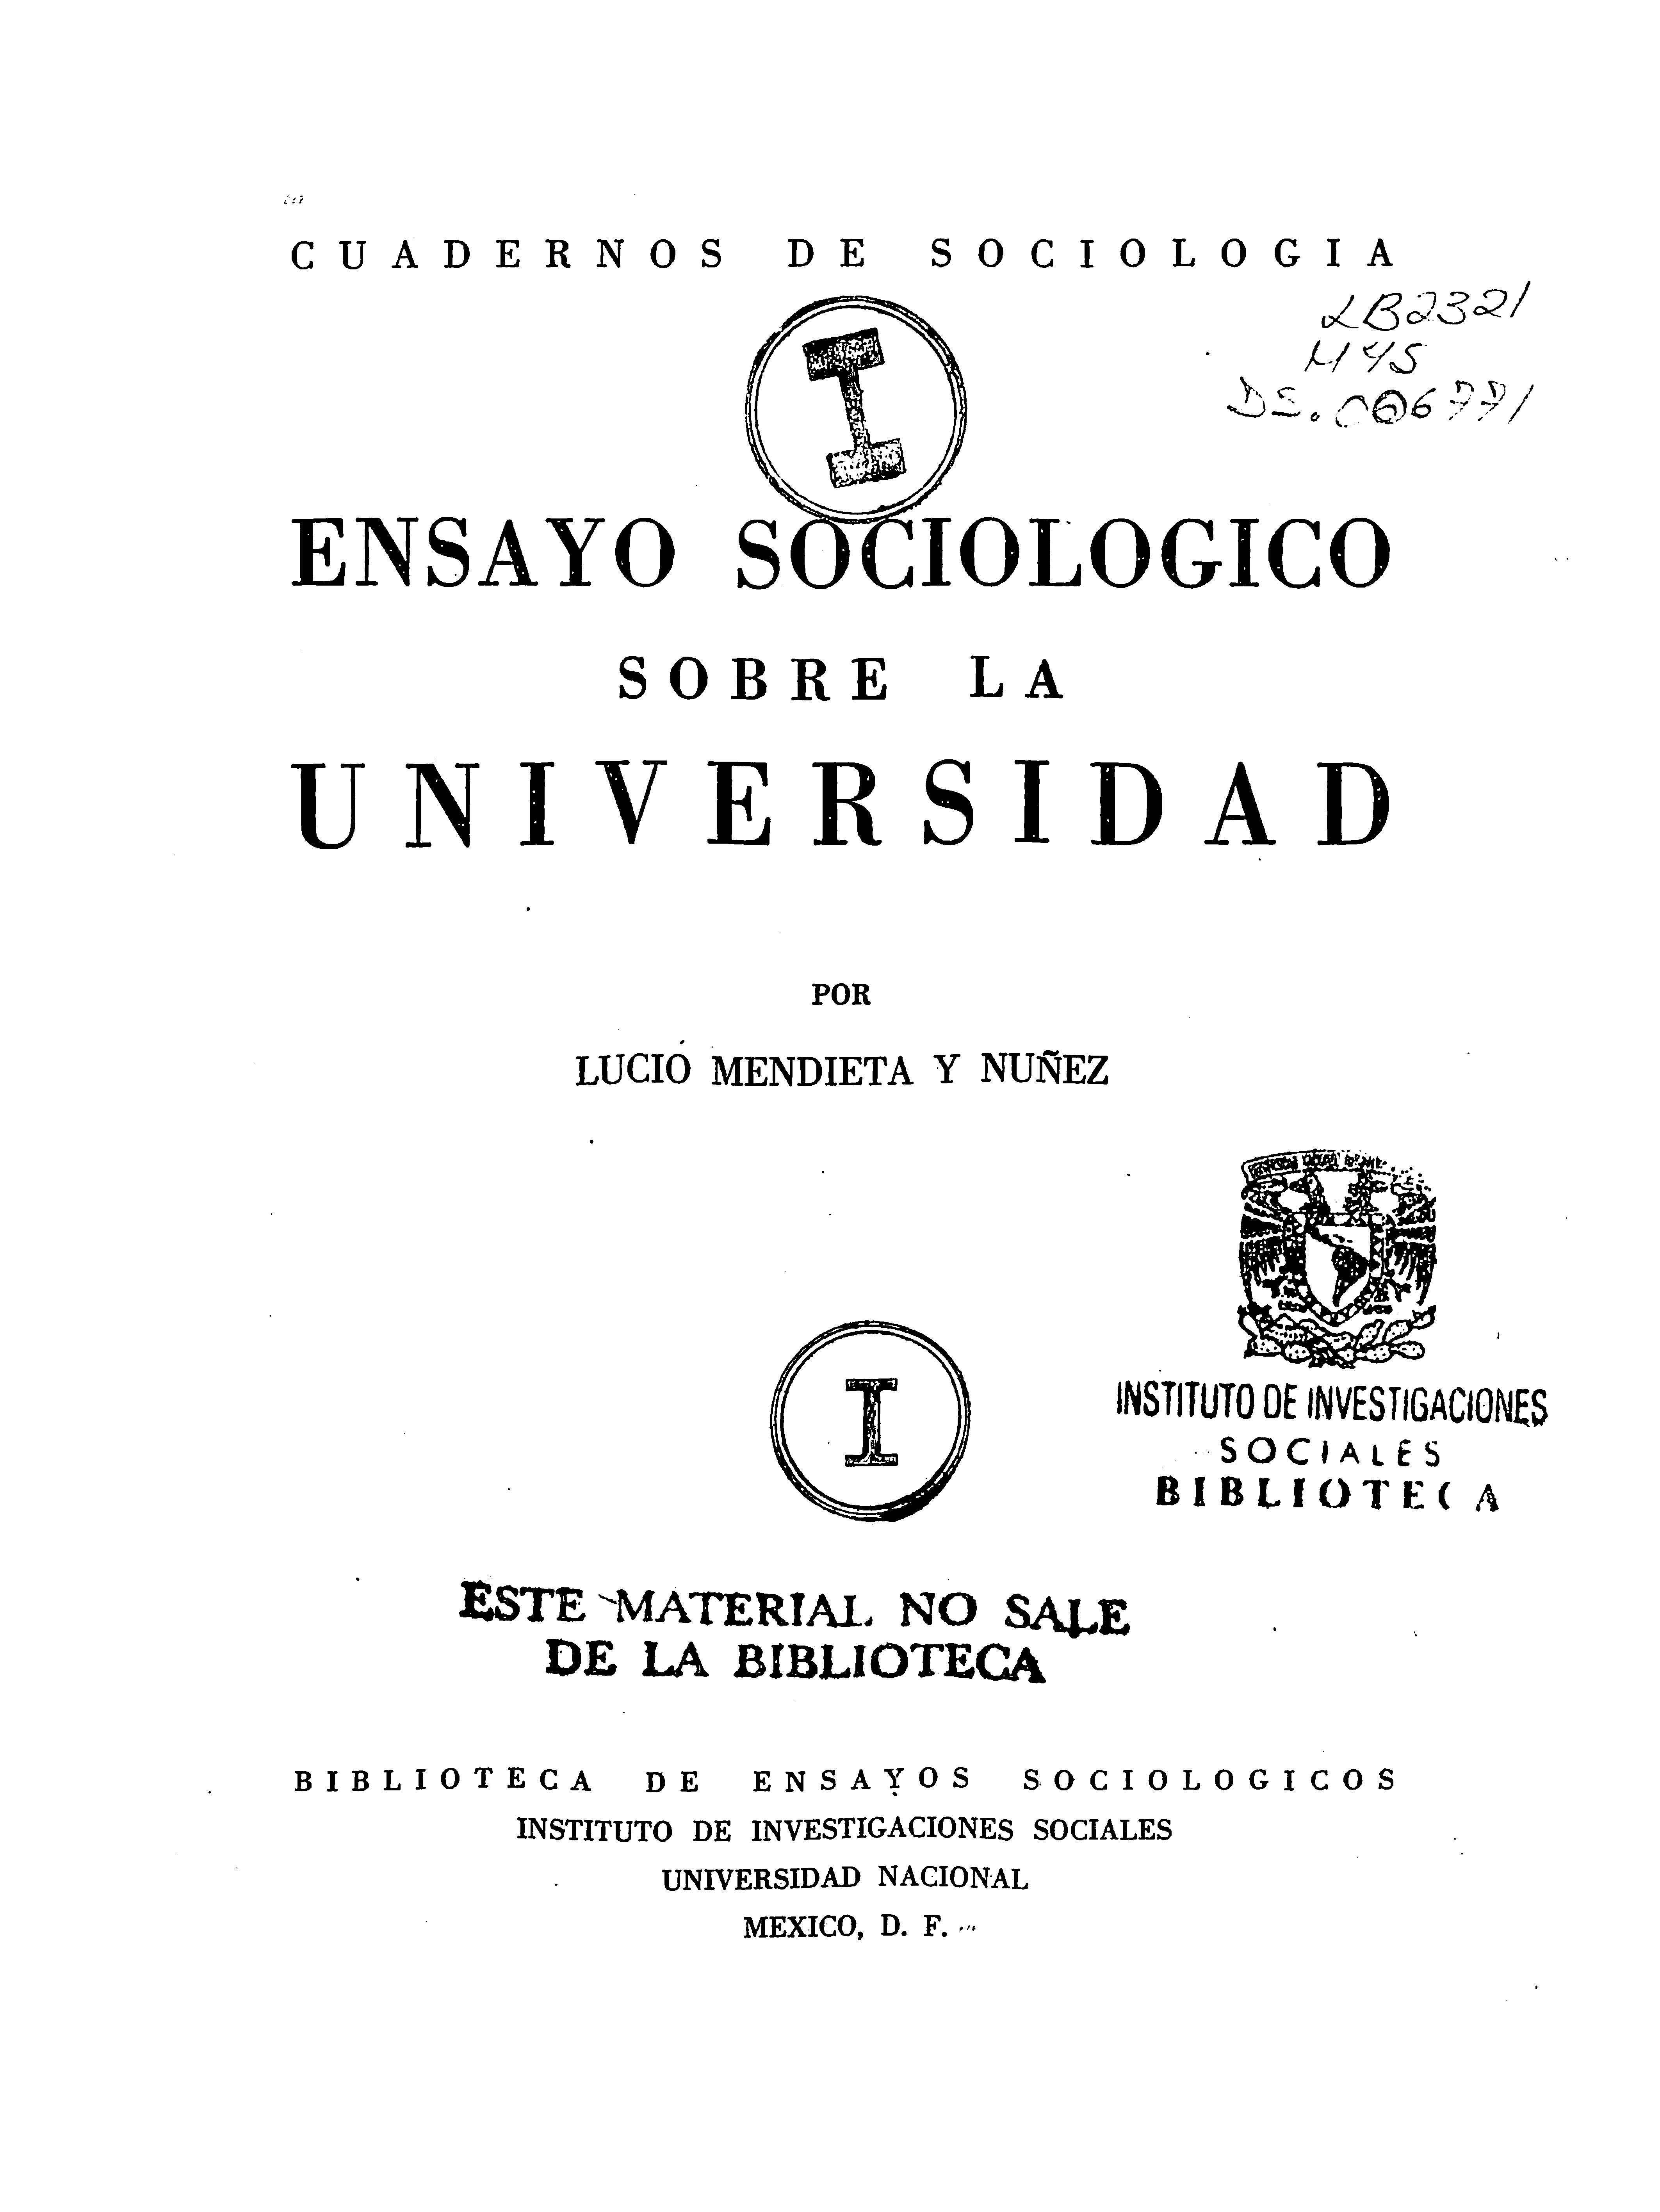 Repositorio del IIS-UNAM: Ensayo sociológico sobre la universidad